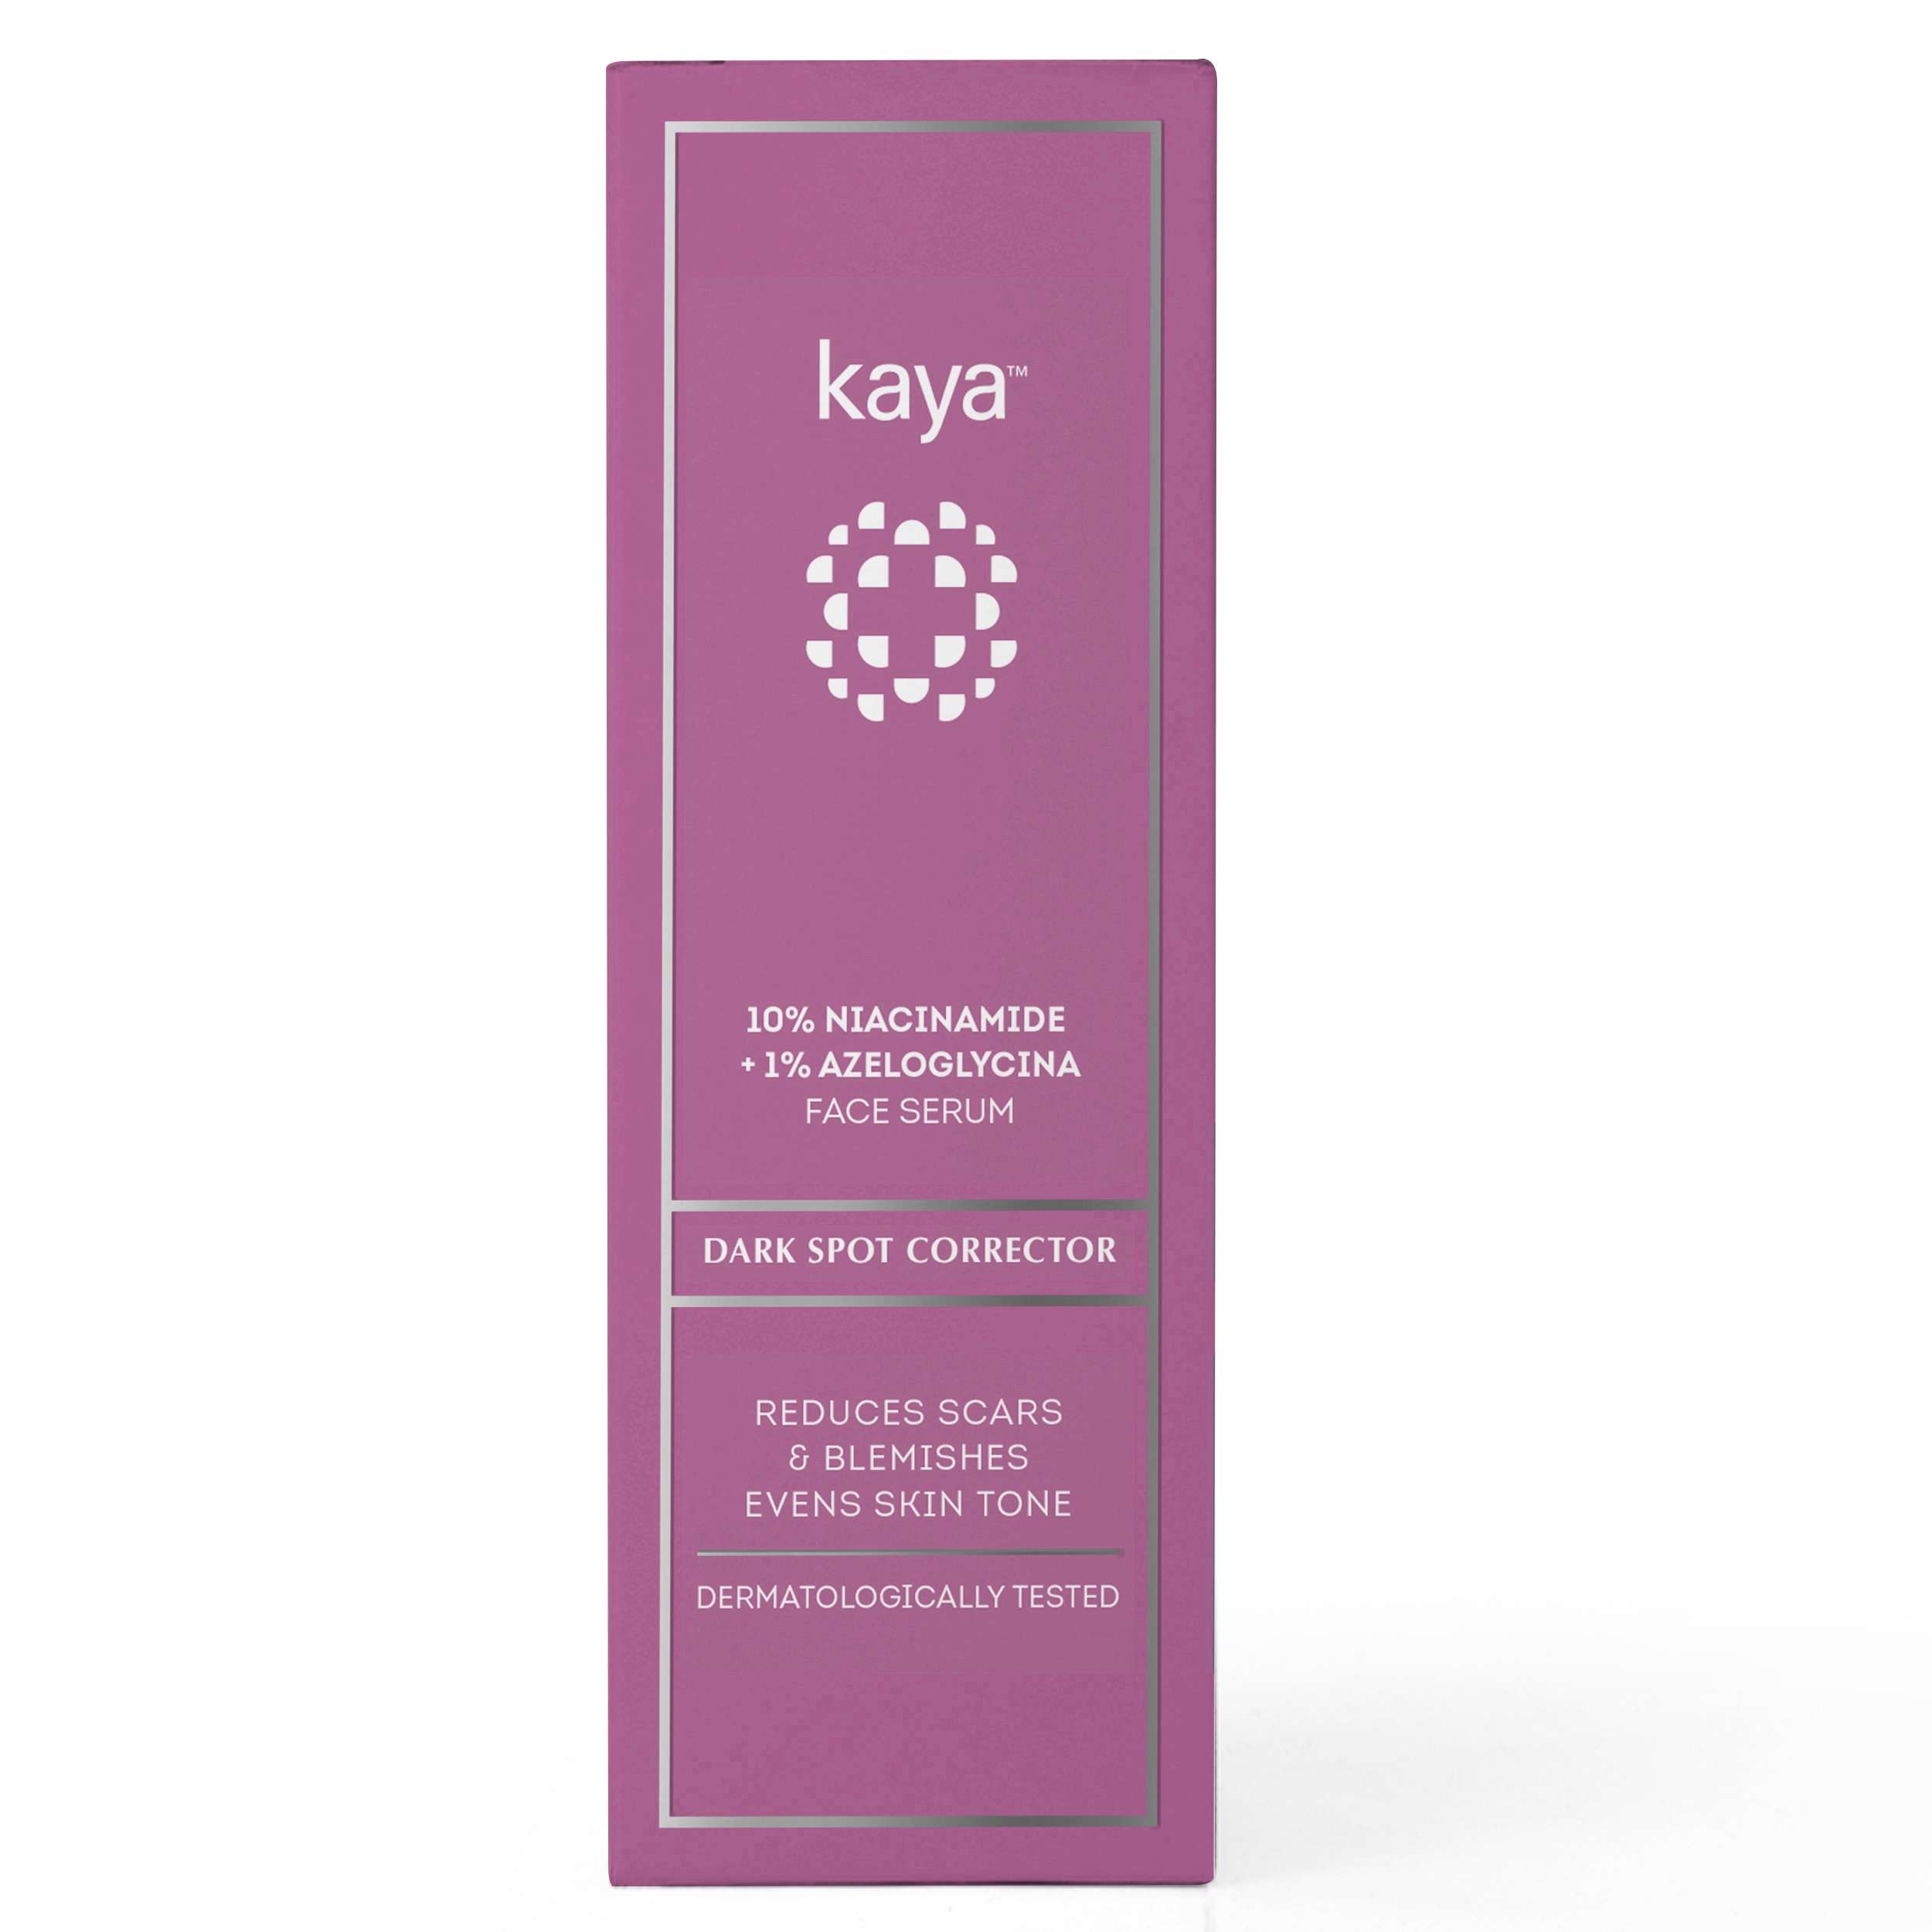 Kaya | kaya Kaya 10% Niacinamide + 1% Azeloglycina Face Serum
Dark Spot Corrector 10